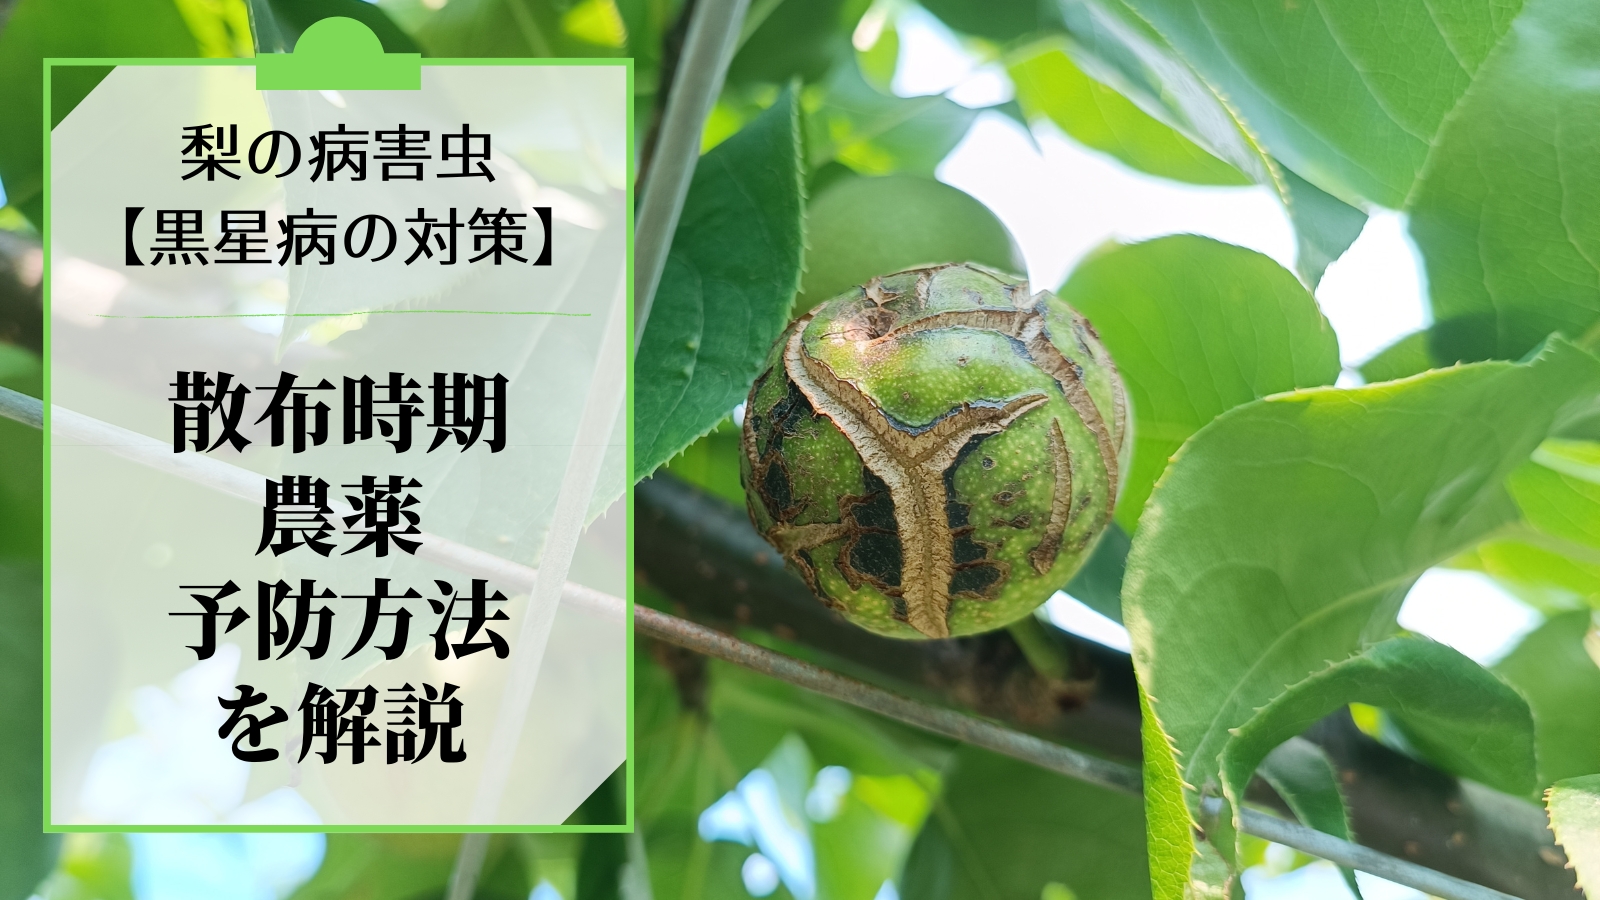 梨の黒星病の対策｜鱗片脱落期からの防除･農薬を解説 45